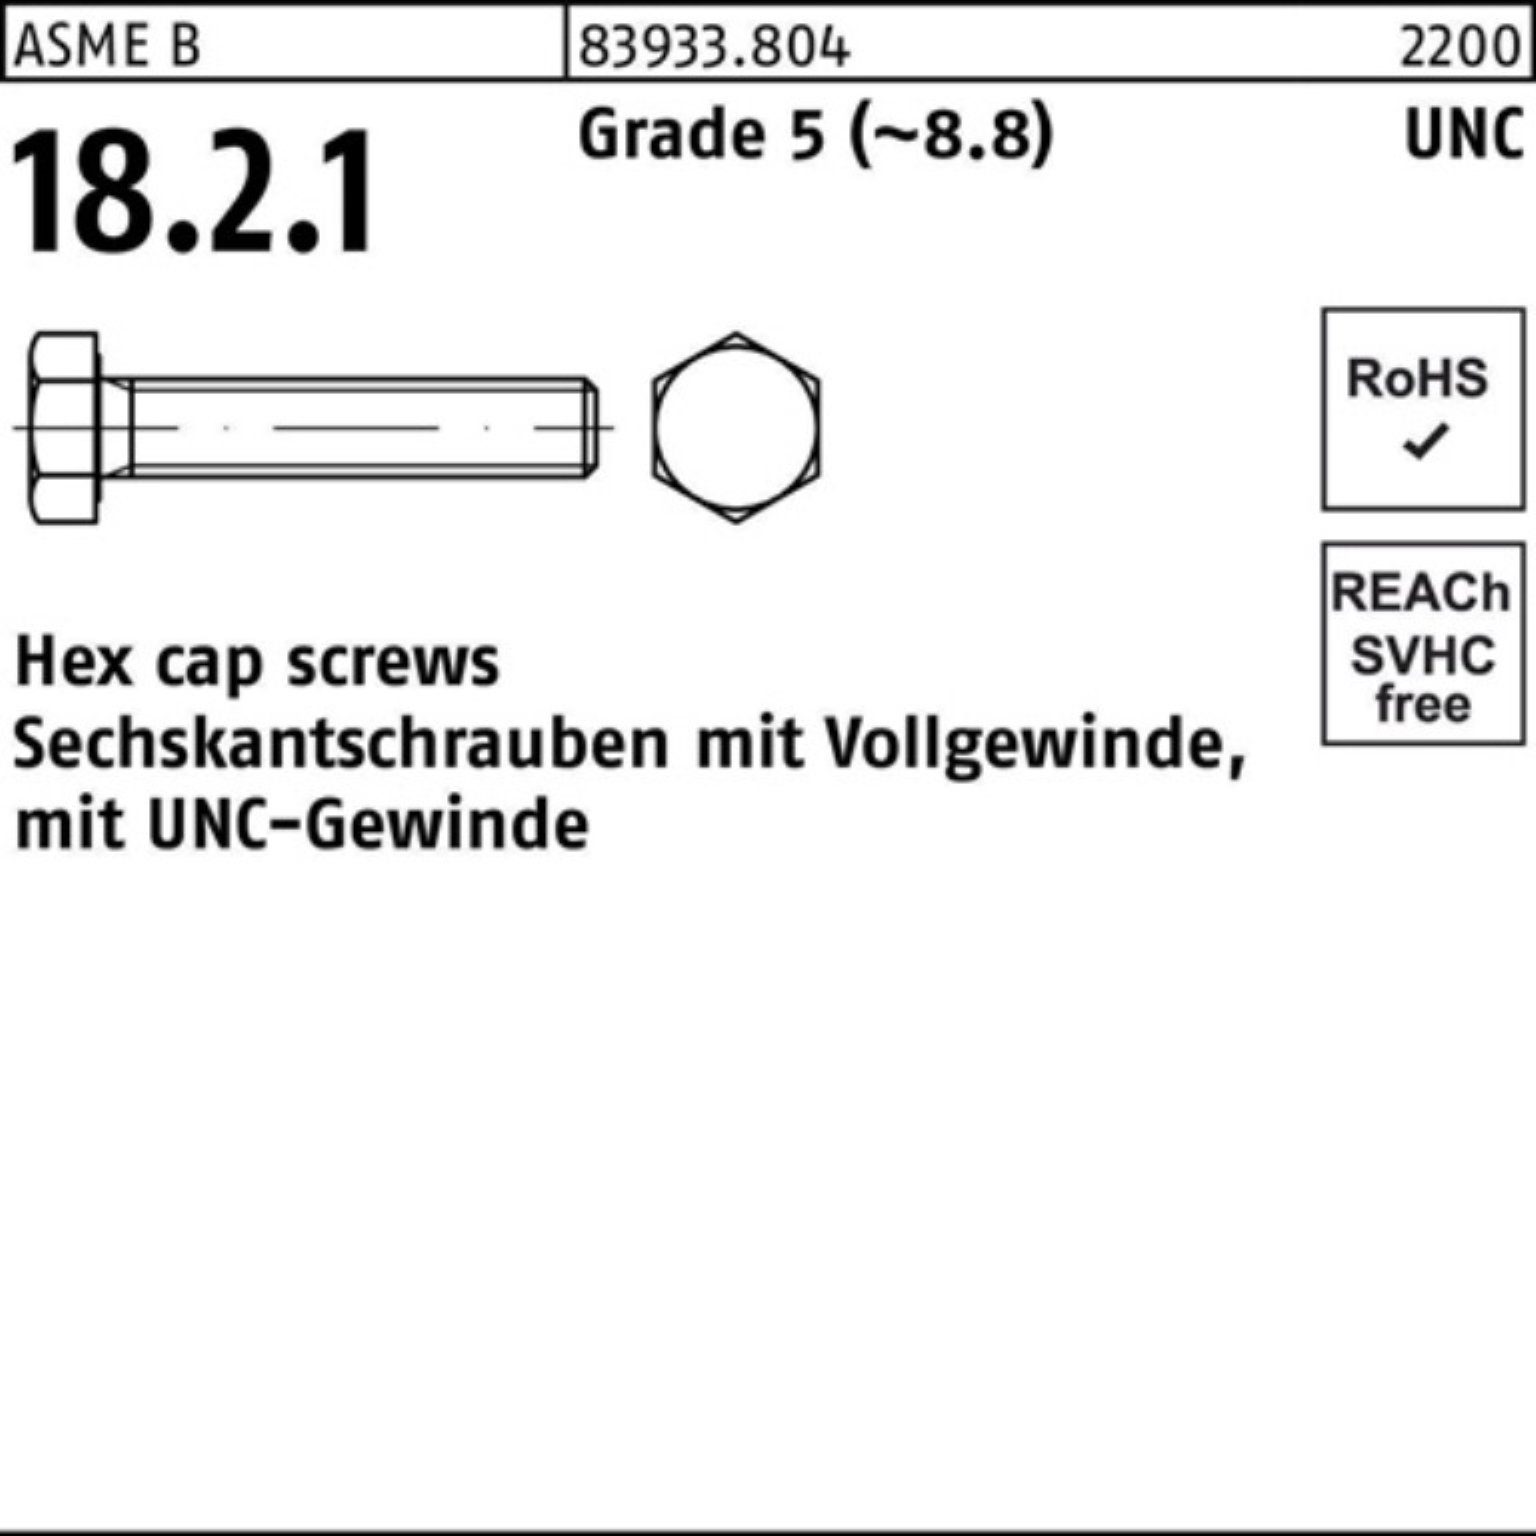 Reyher Sechskantschraube 100er Pack Sechskantschraube R 83933 UNC-Gewinde VG 1x 2 Grade 5 (8.8